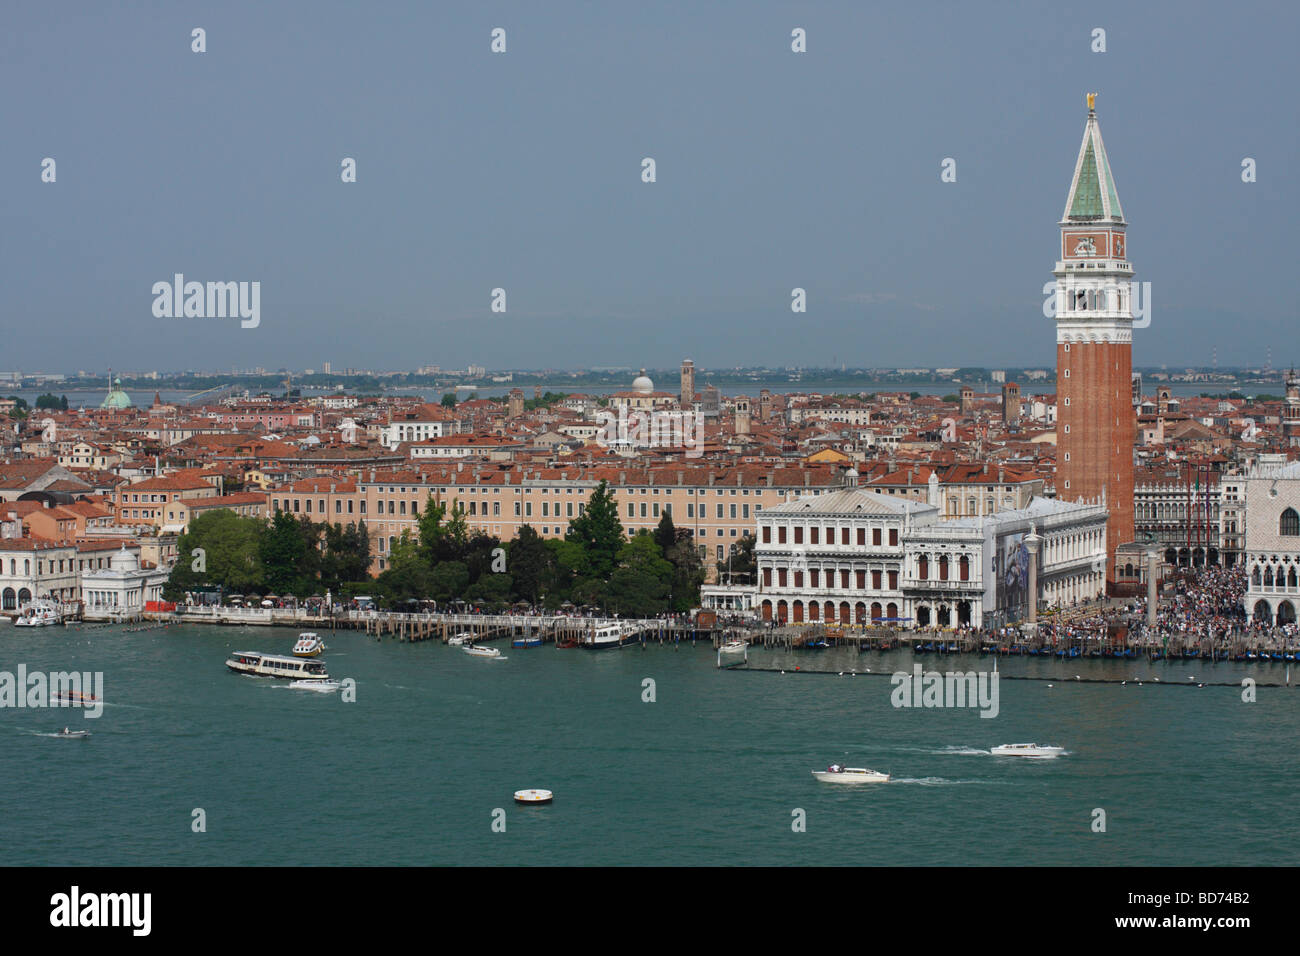 Piazza San Marco, view from San Giorgio Maggiore, Venice, Italy. Stock Photo